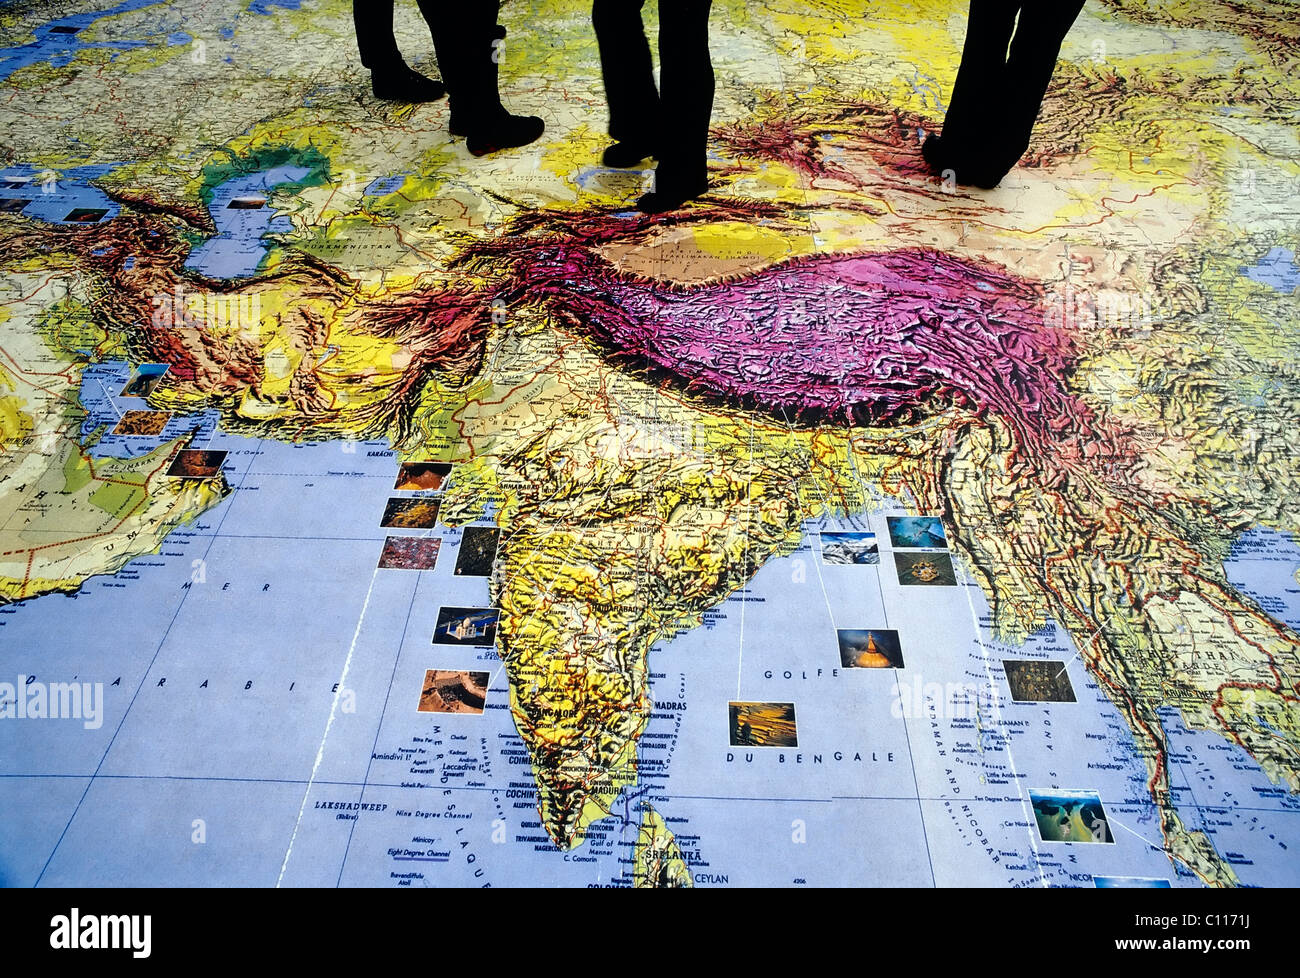 Les passants marchant sur une carte du monde sur le sol, détail de l'Asie, l'Inde, Amsterdam, Pays-Bas, Europe Banque D'Images